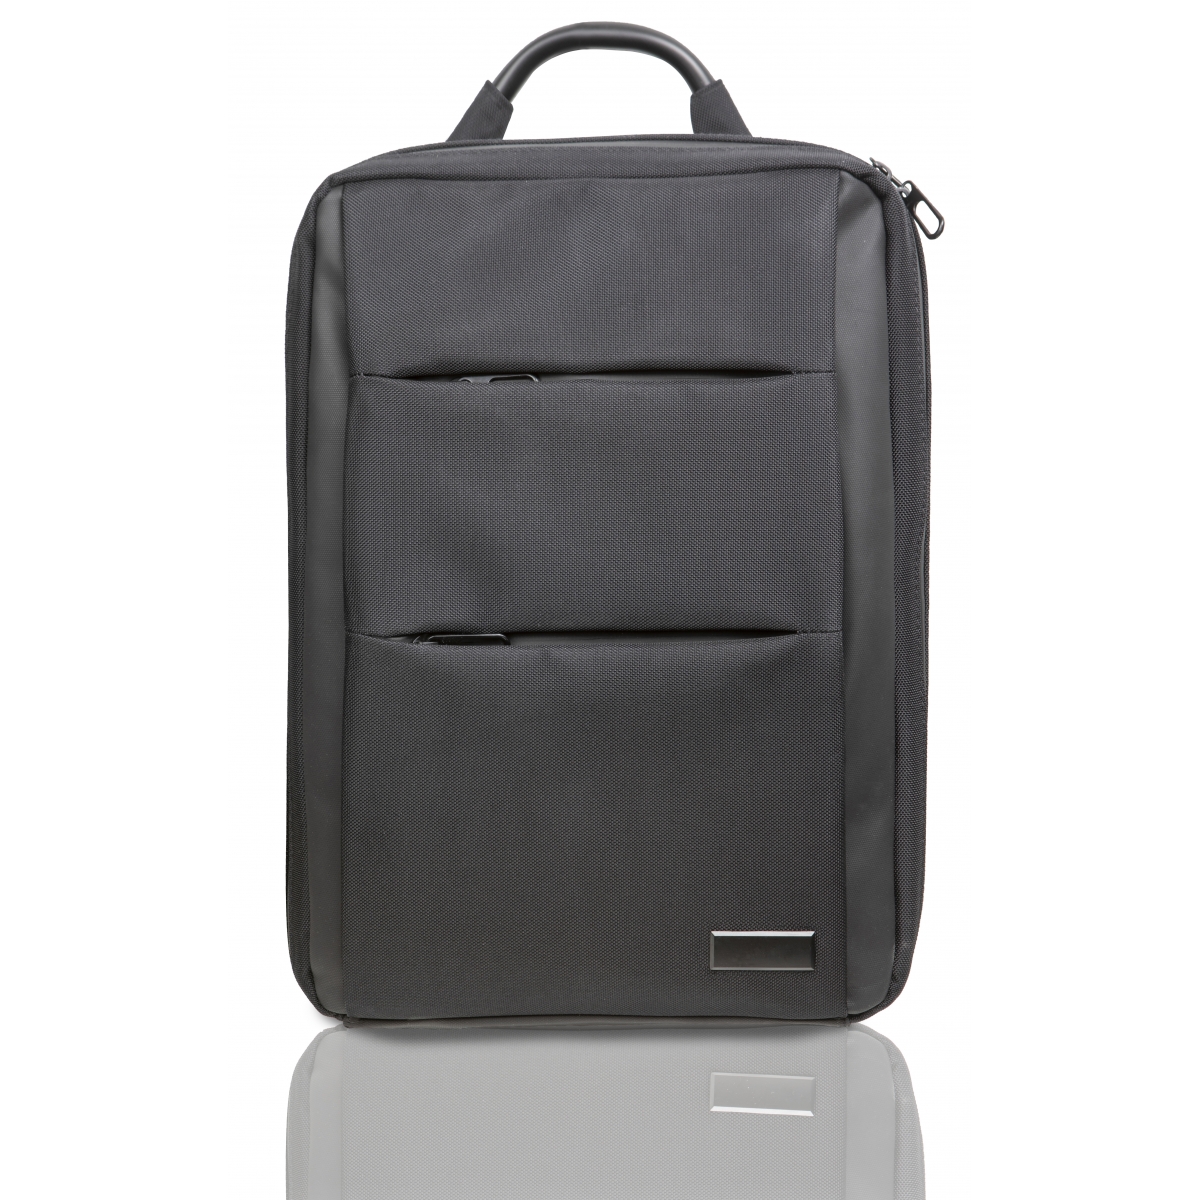 L10 - Eco business backpack 10.000 mAh